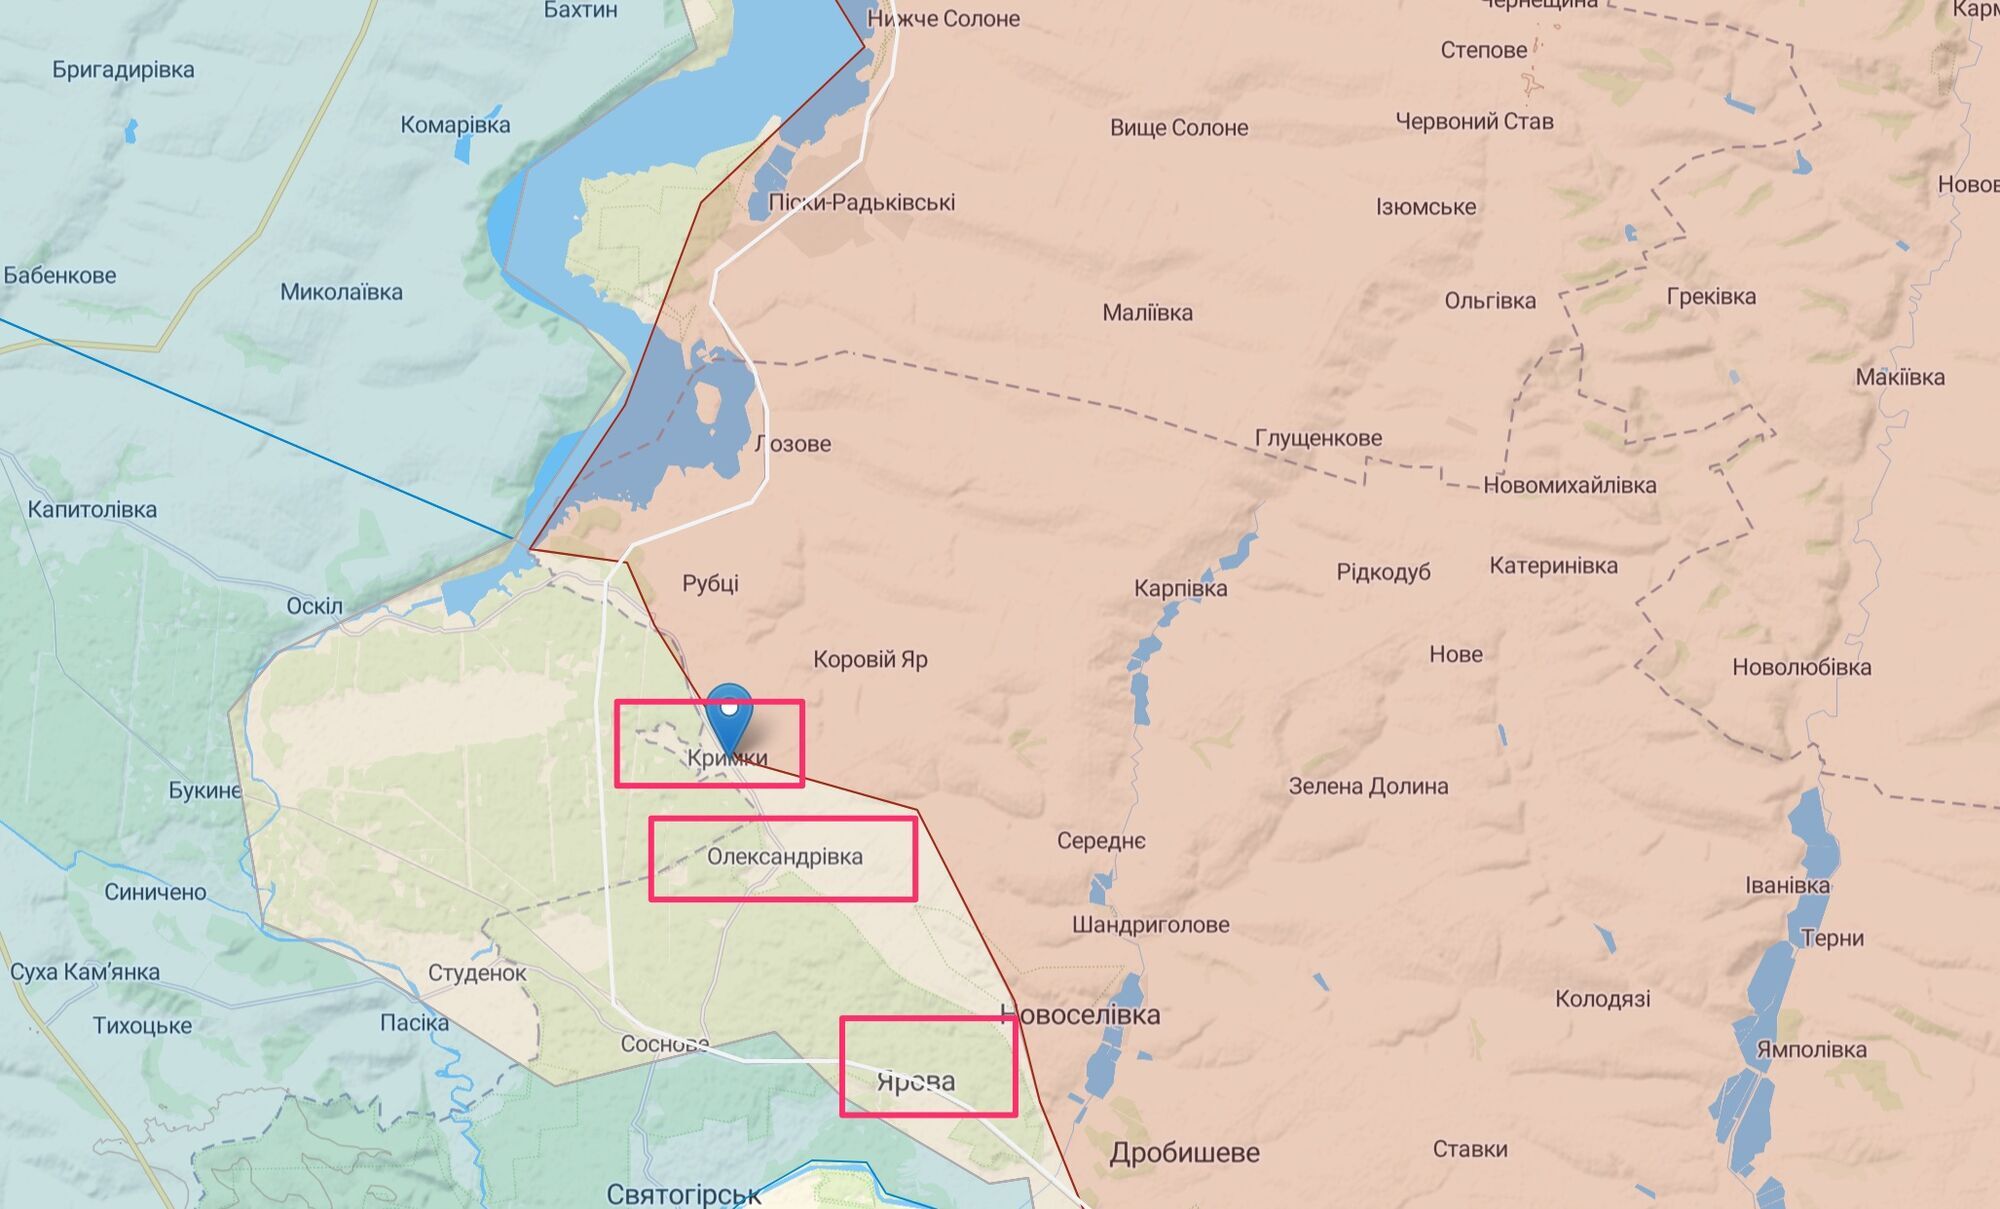 Сообщают о вероятном освобождении нескольких населенных пунктов в Донецкой области.